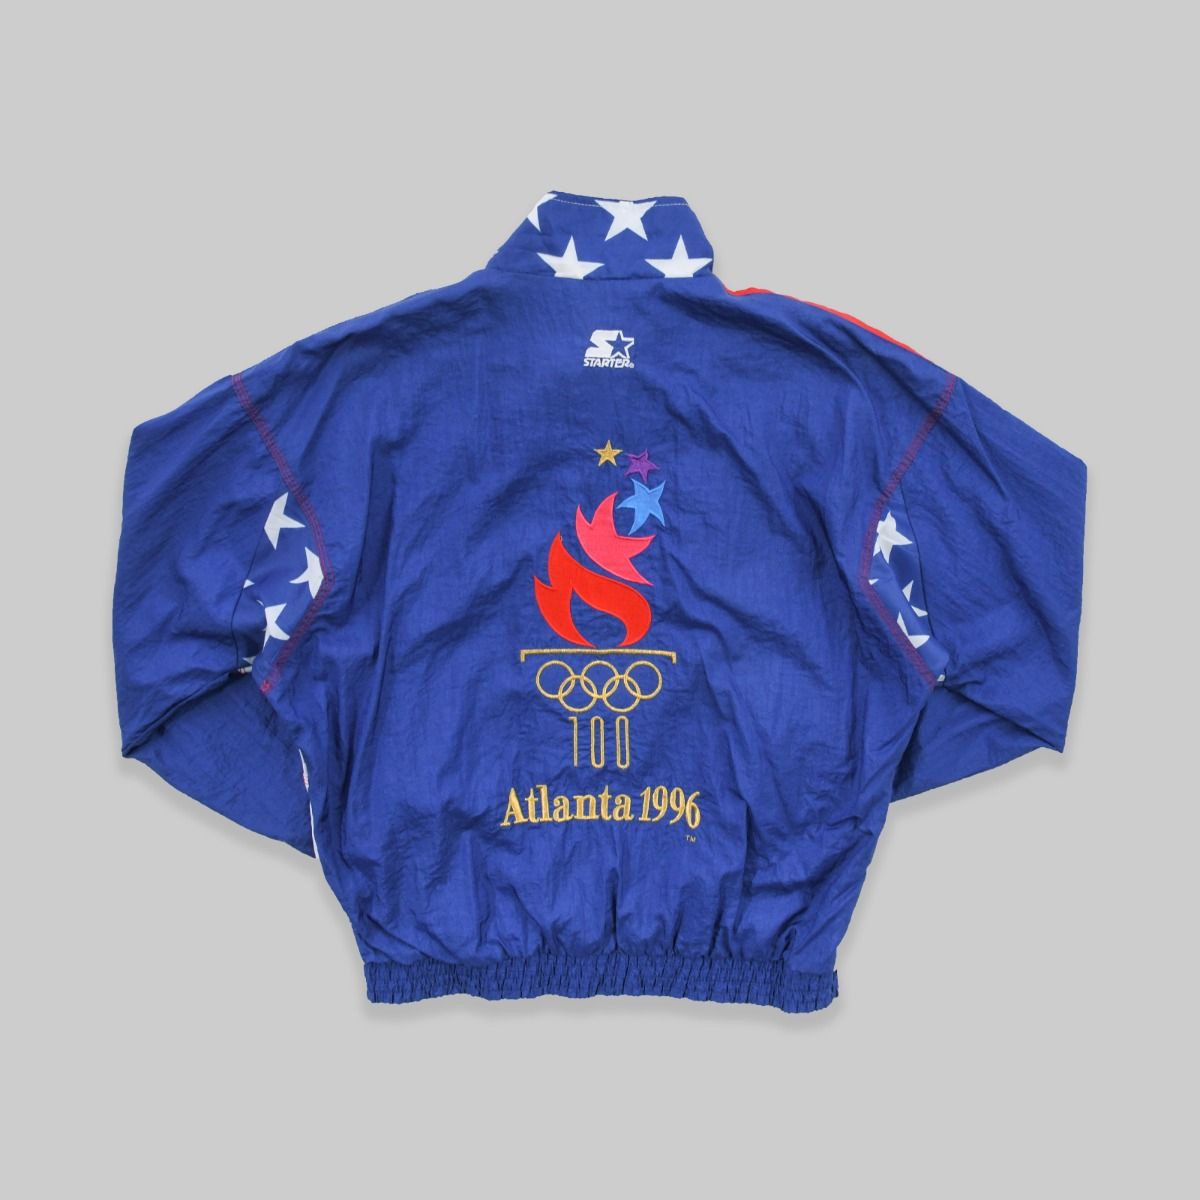 Starter x USA 1996 Atlanta Olympics Jacket